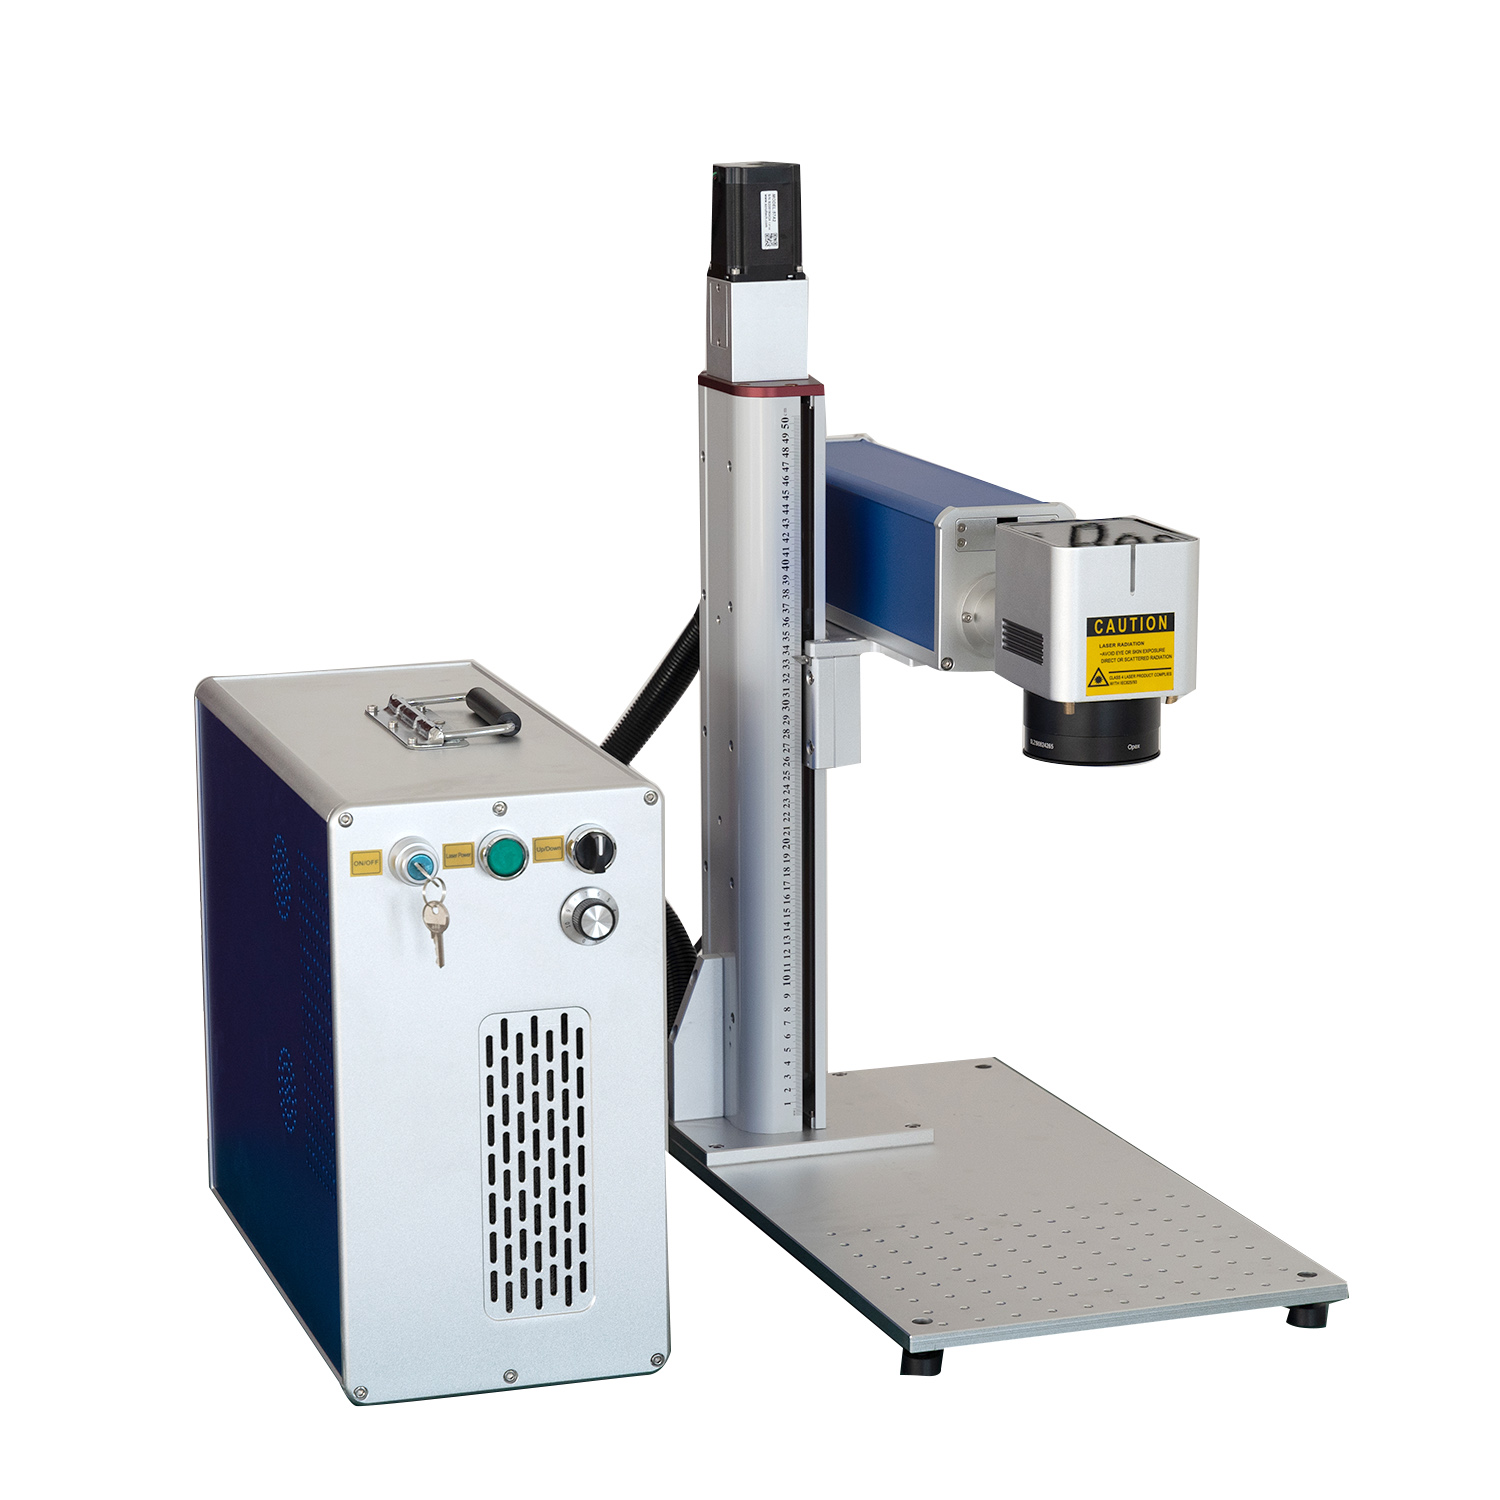 JPT Faserlaser 50W 60W 80W Laserbeschriftungsmaschine Tiefgravur Schneiden EZCAD3 2.5D 3D Faserlasergravierer